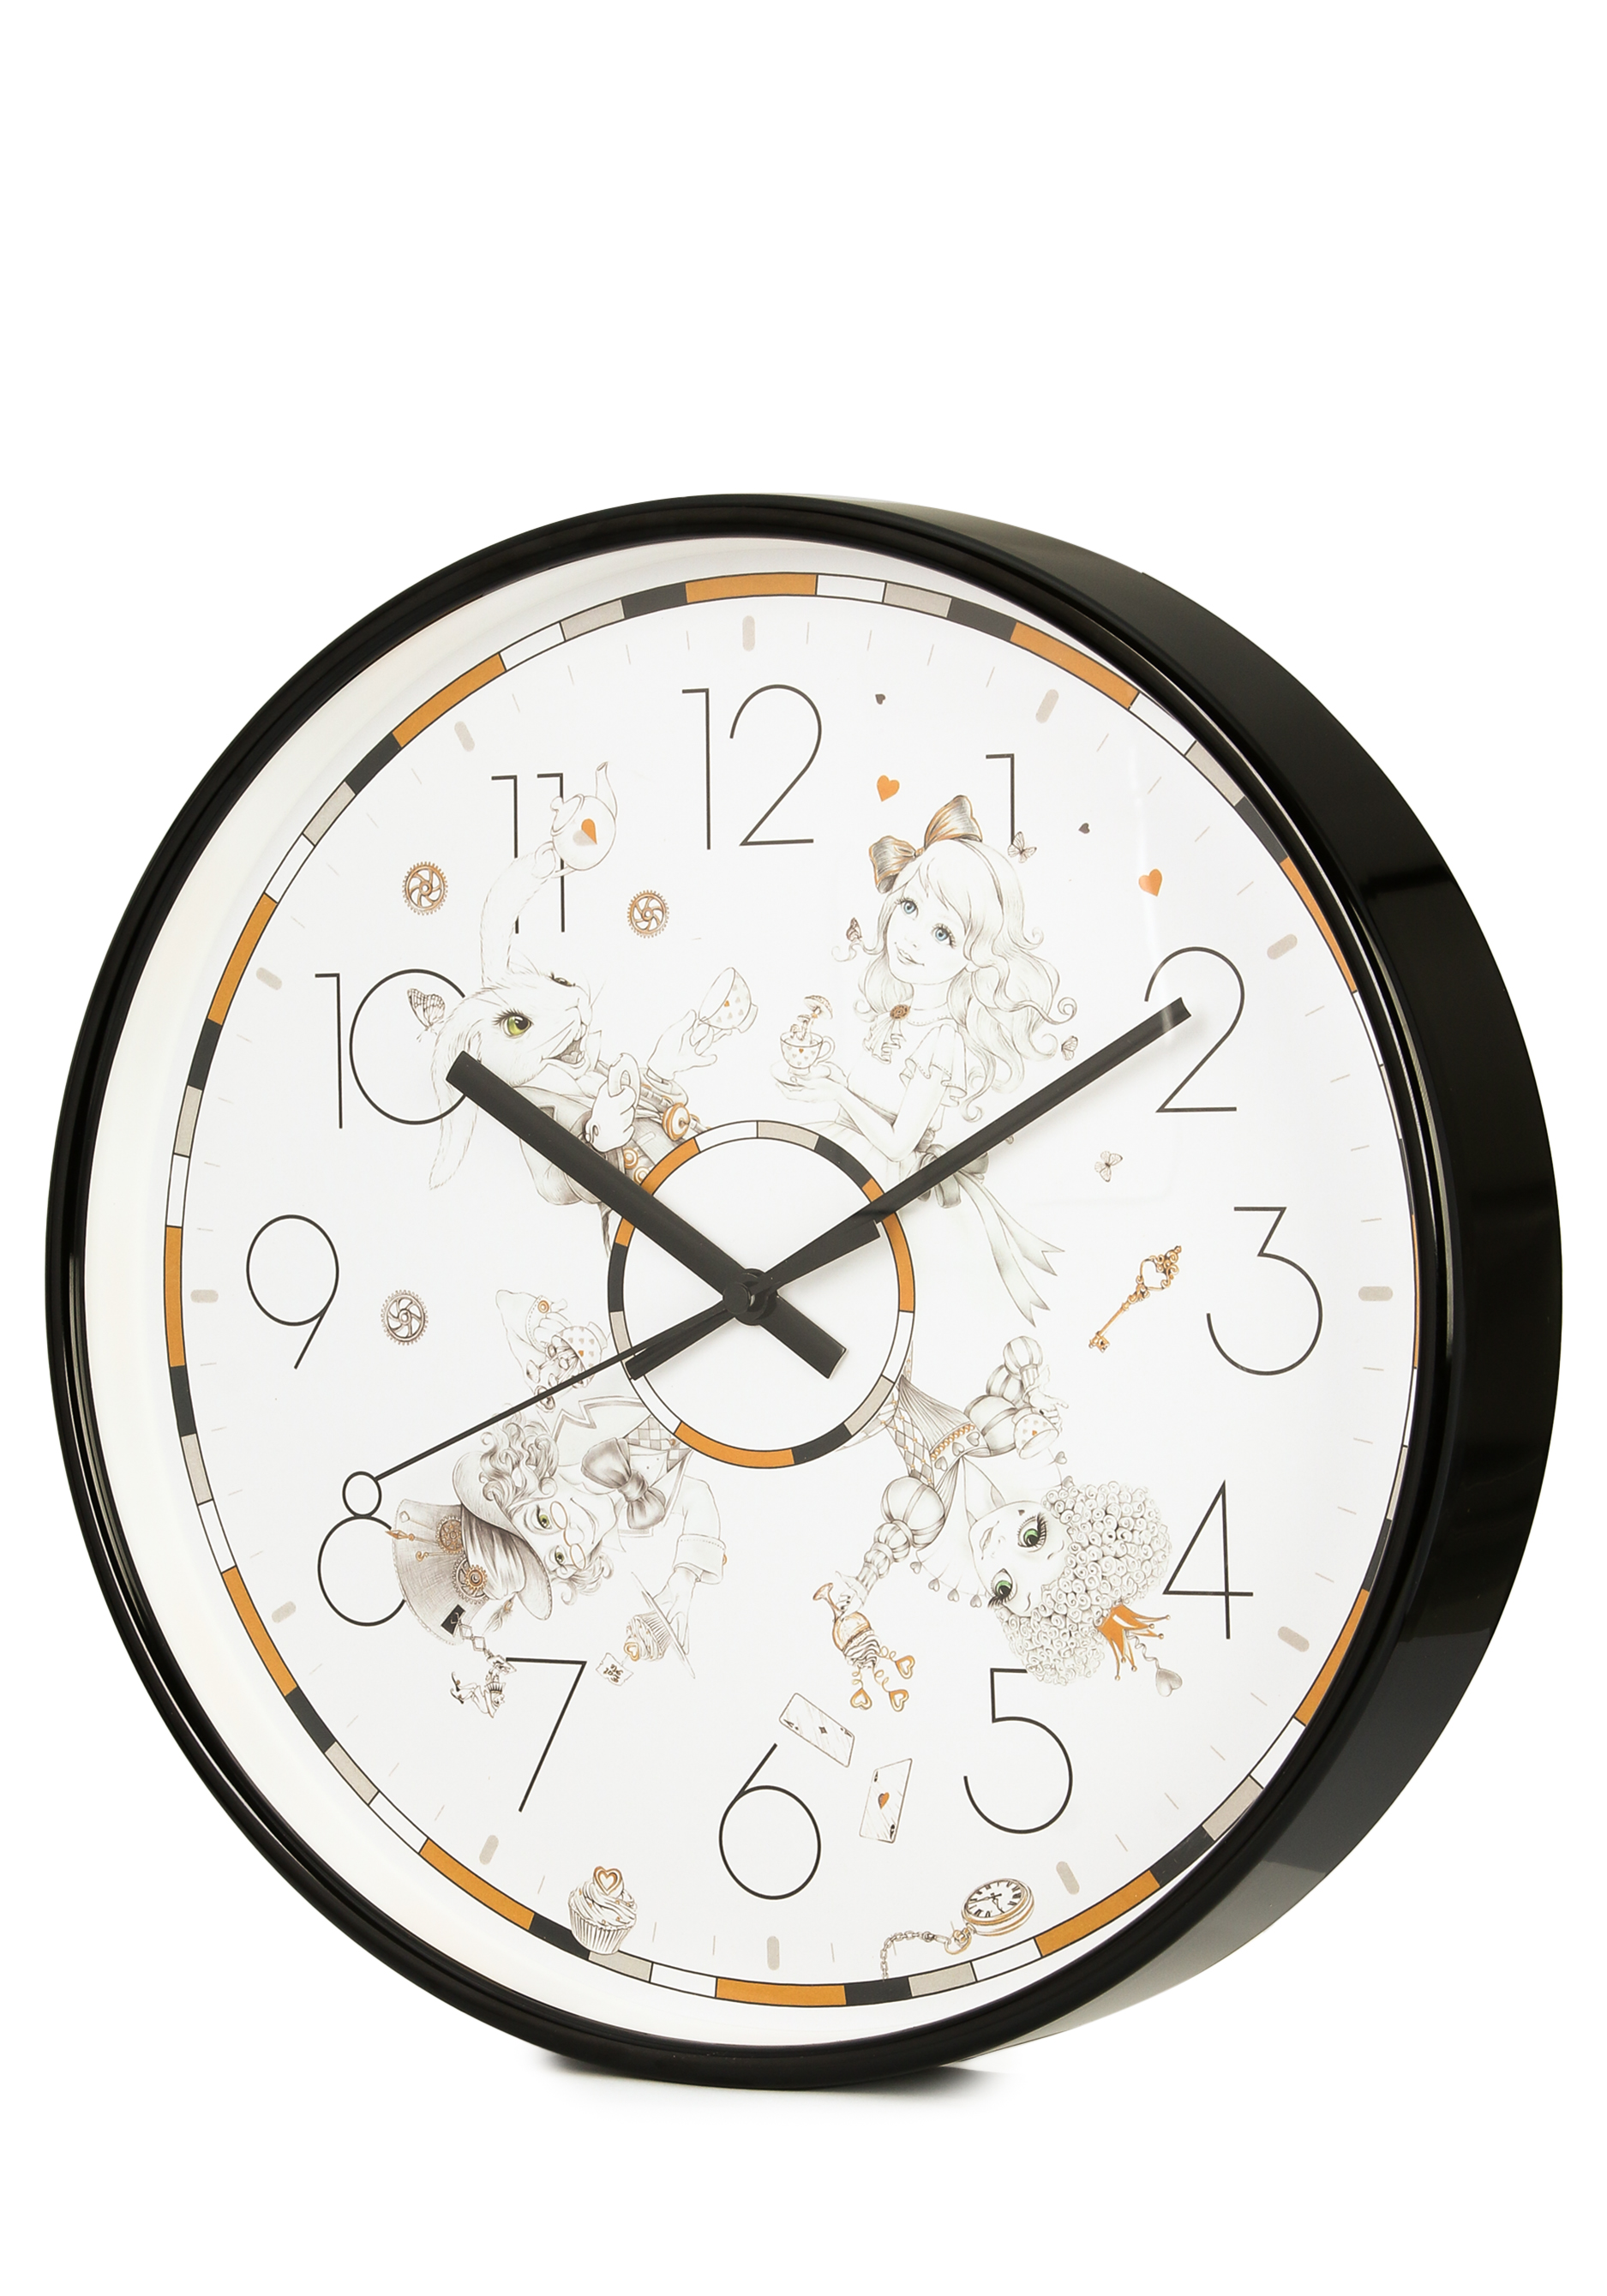 Часы настенные "Волшебство времени" Lefard, цвет черный, размер 30,5 см - фото 2